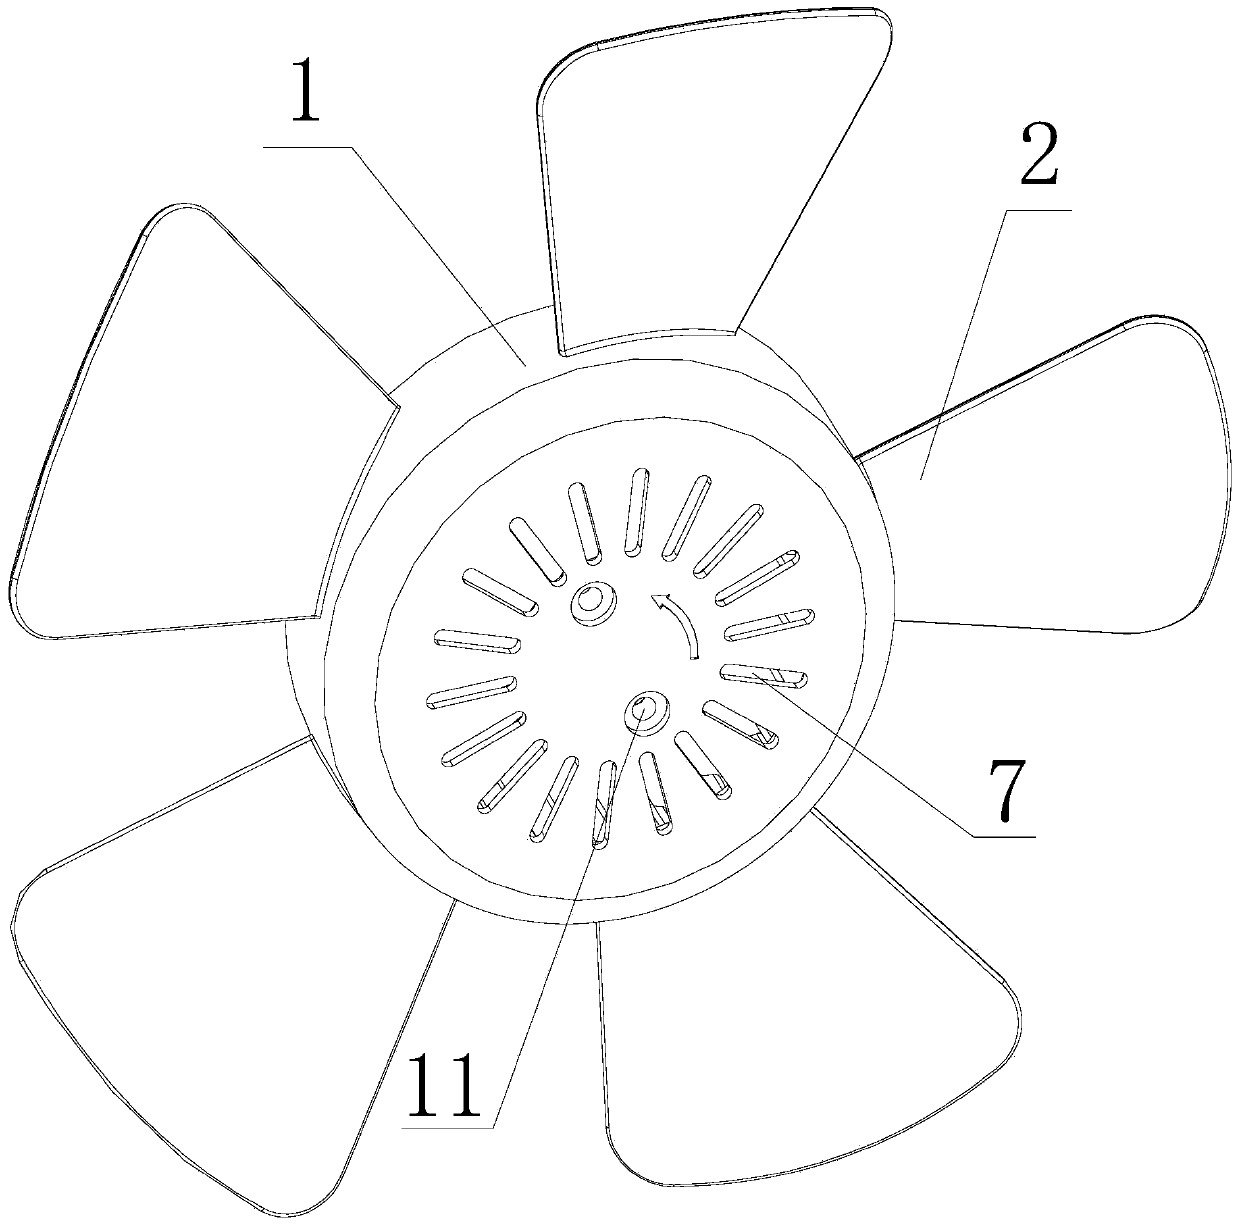 Multifunctional fan blade hub